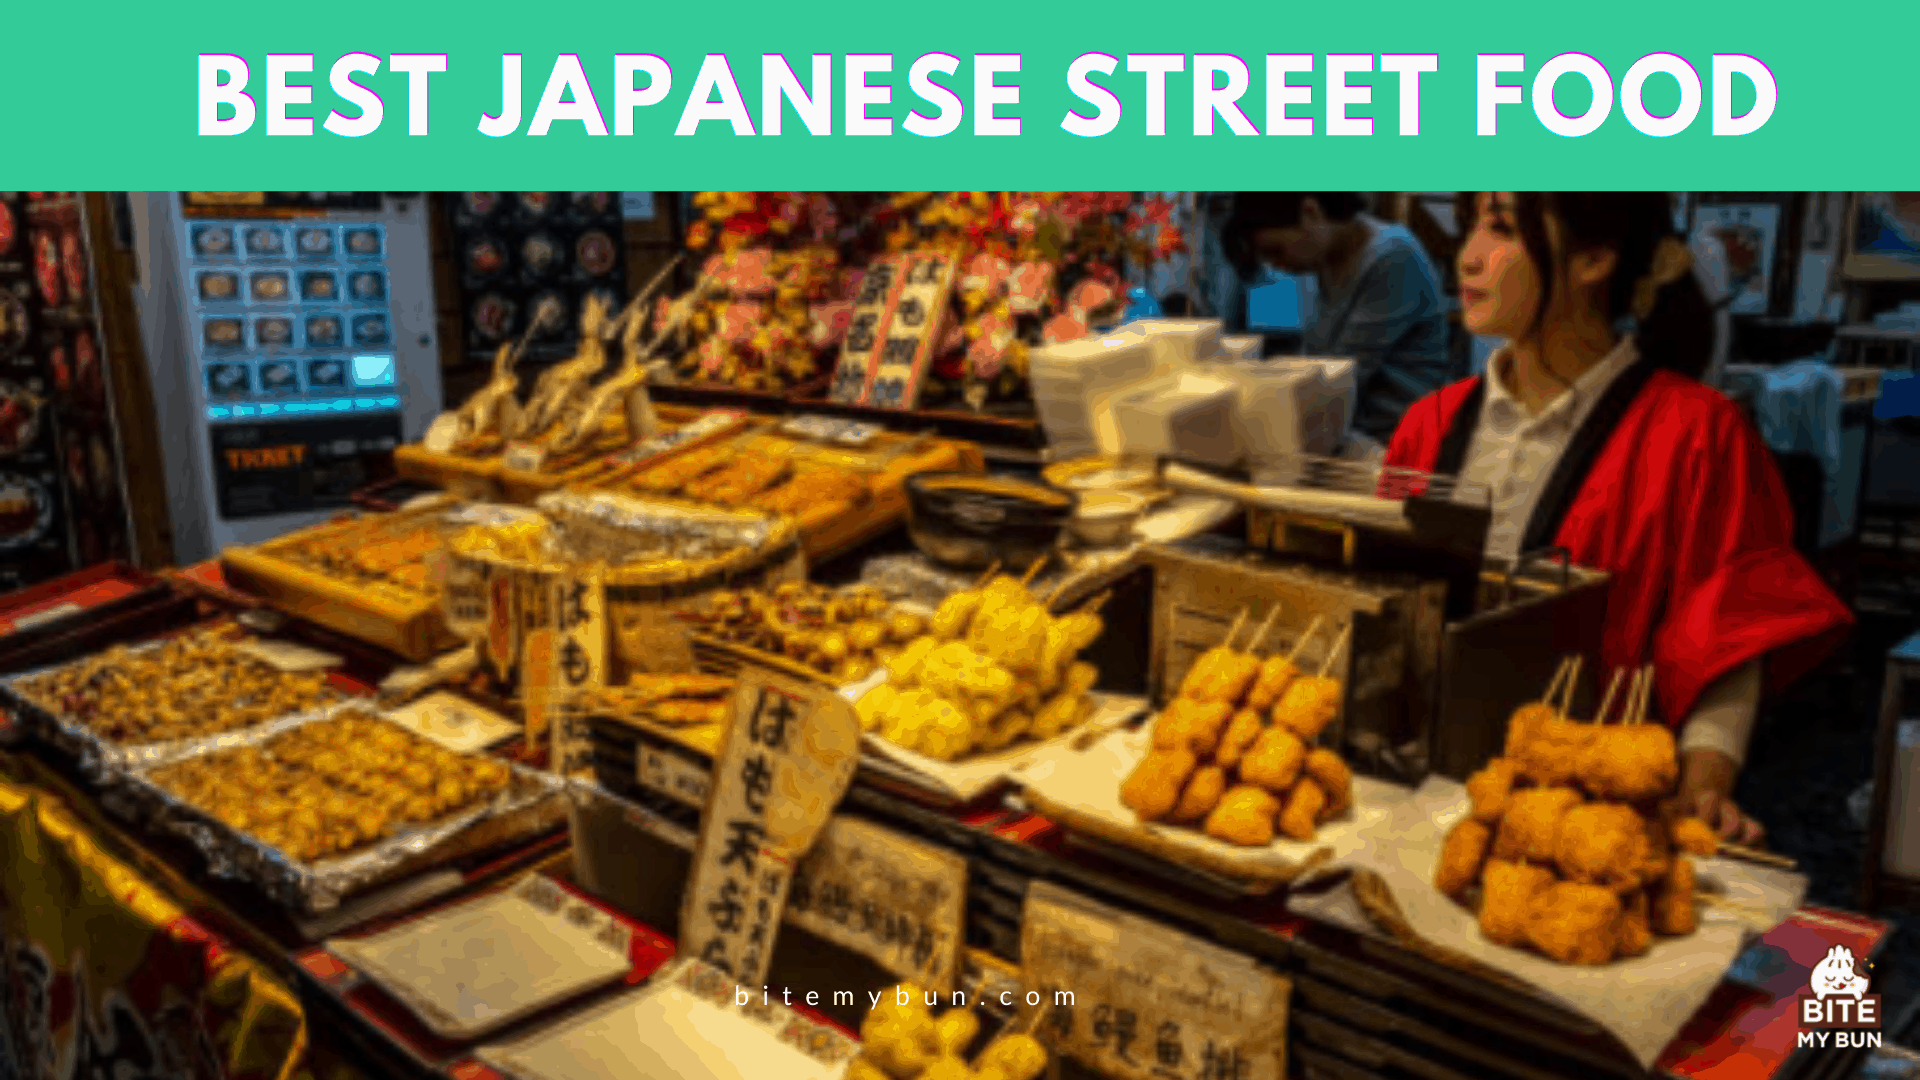 Els 7 menjars de carrer japonesos més deliciosos que simplement heu de provar